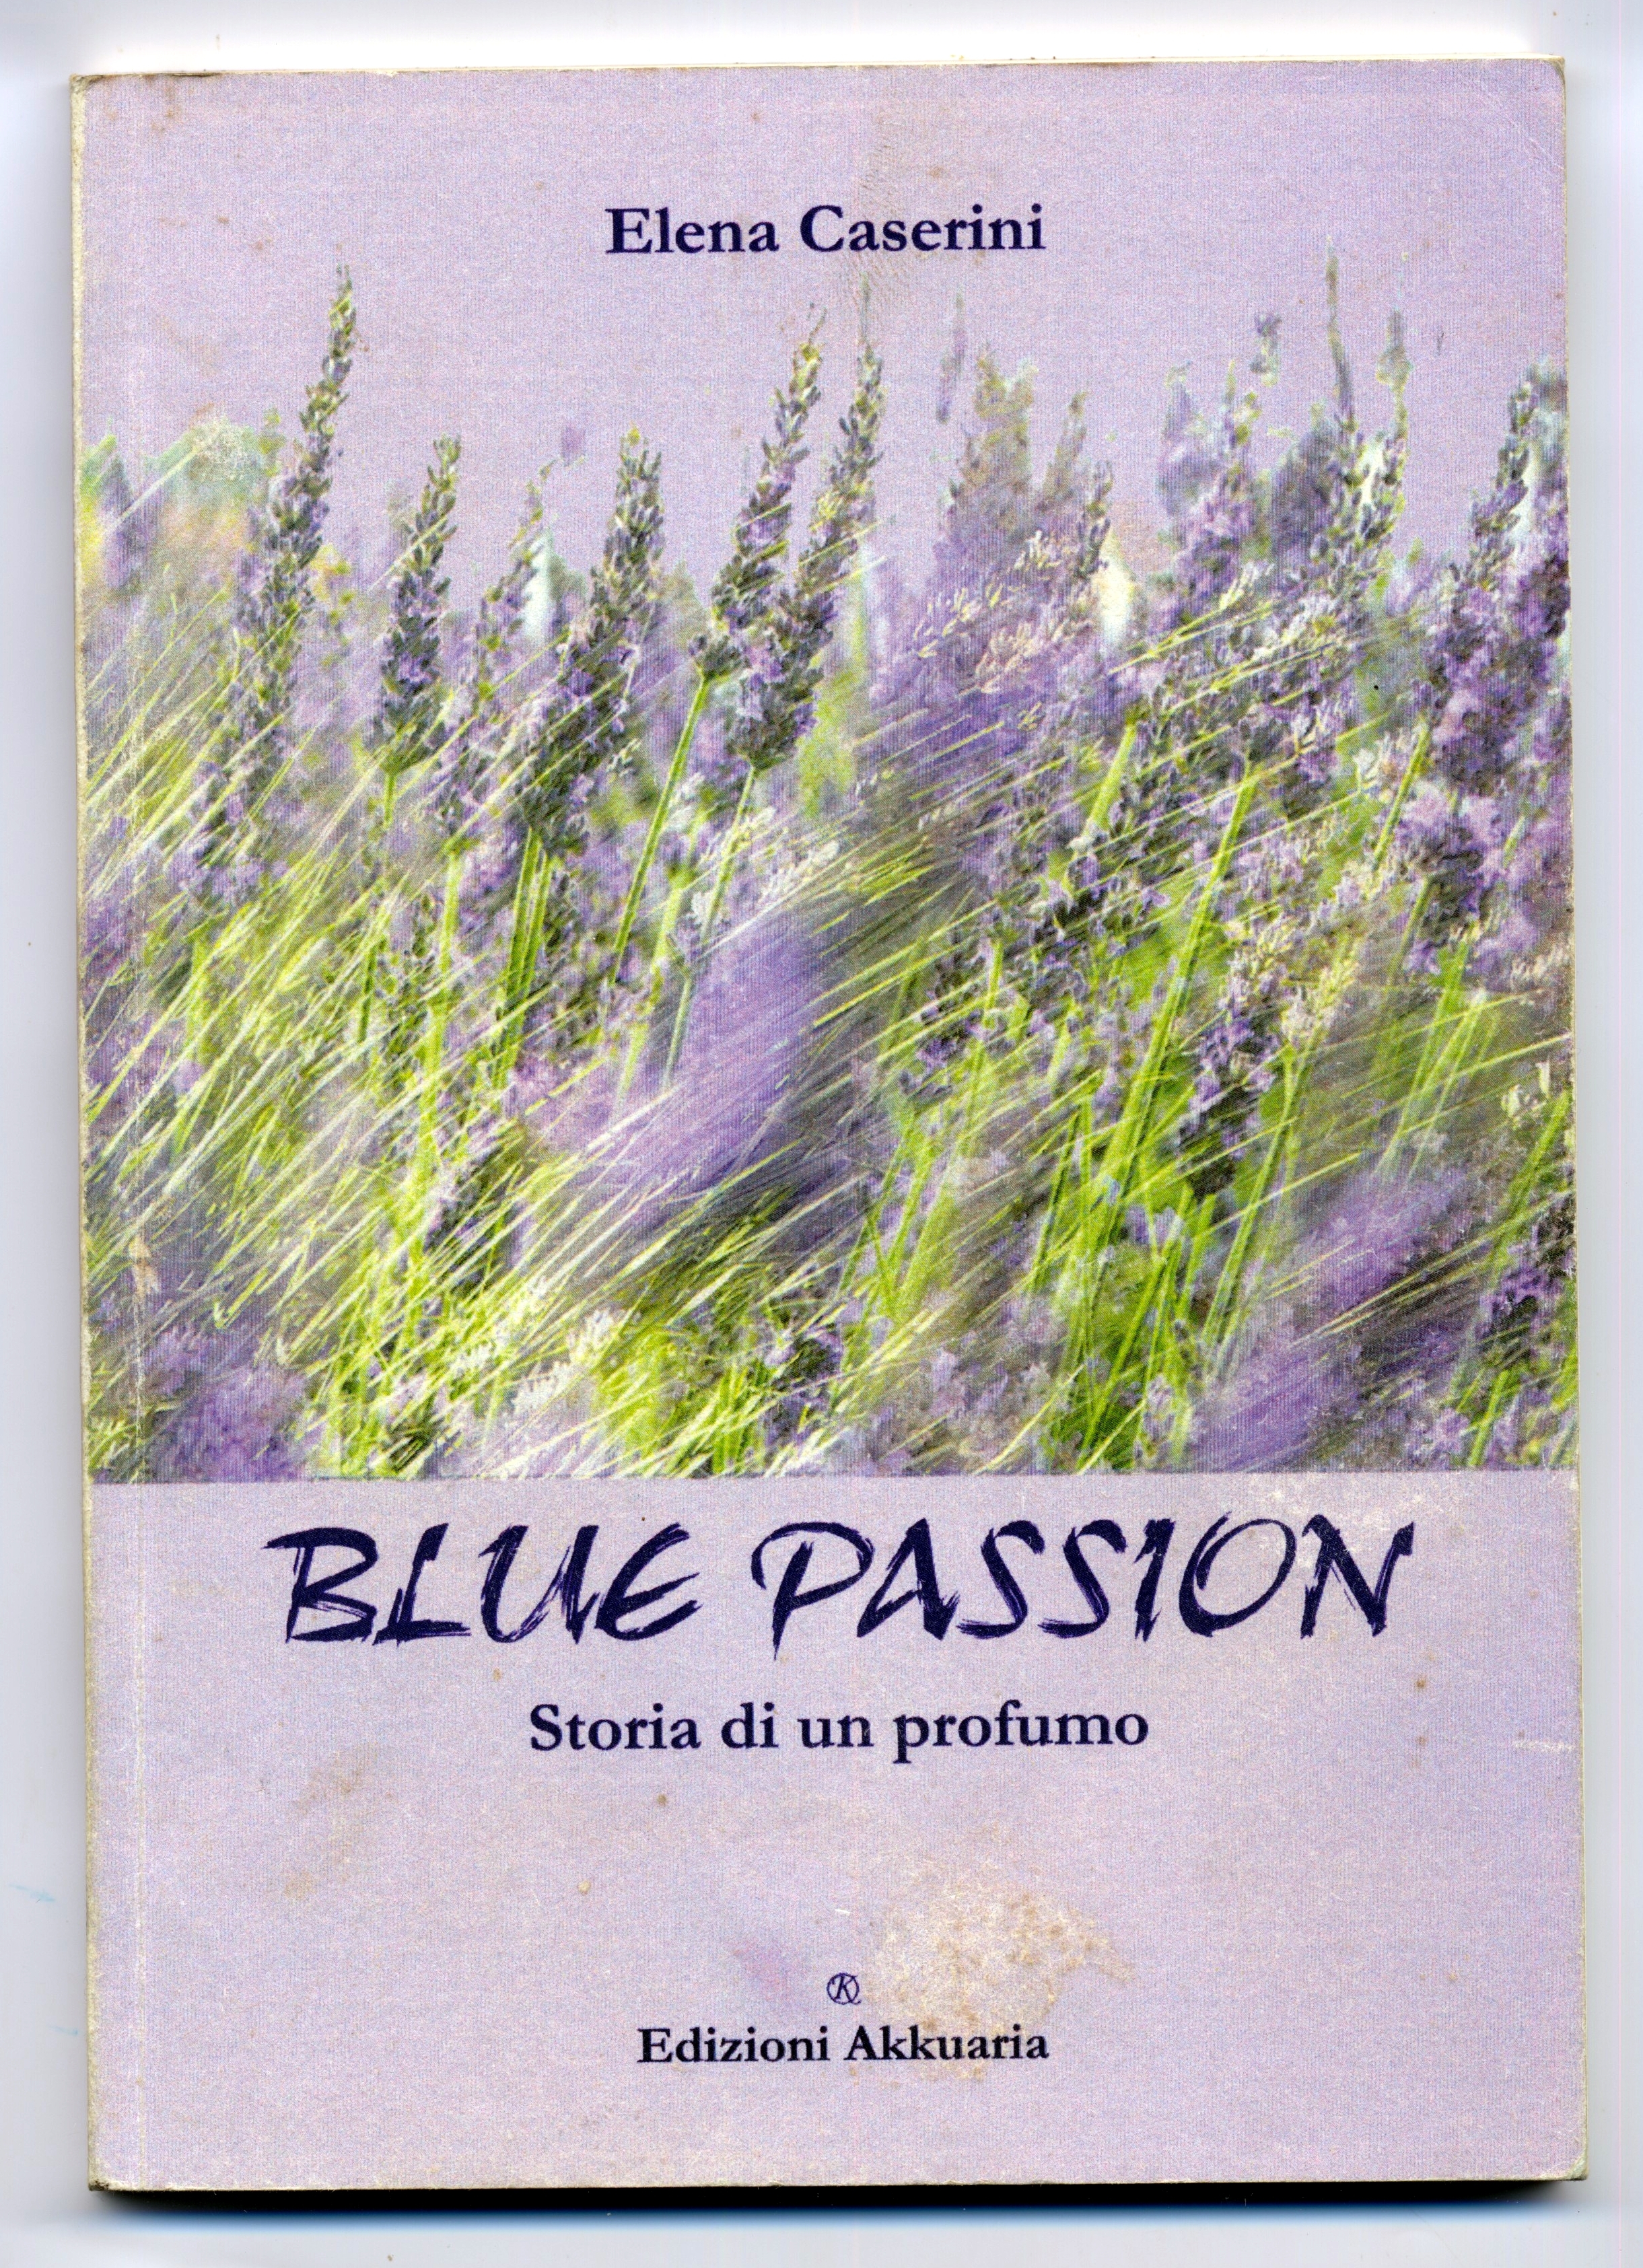 Copertina del libro di Elena Caserini Blue Passion, storia di un profumo delle edizioni Akkuaria. Storia ambientata a Casalvento dove la Lavanda del Chianti trova la sua realtà